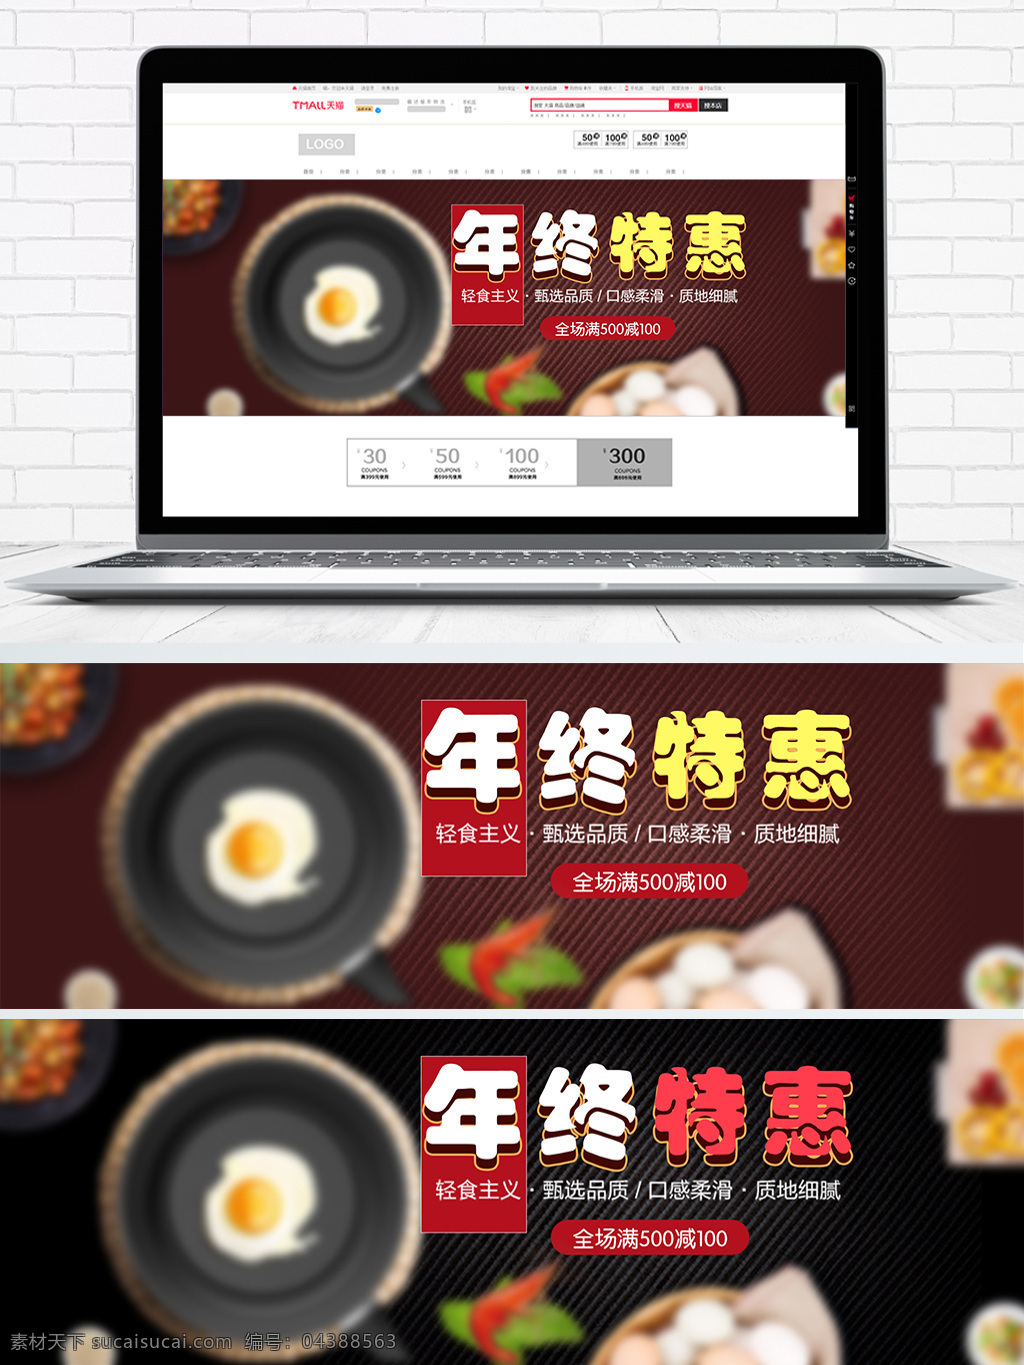 淘宝 天猫 美食 年终 特惠 banner 海报 促销 促销活动 电商 年终特惠